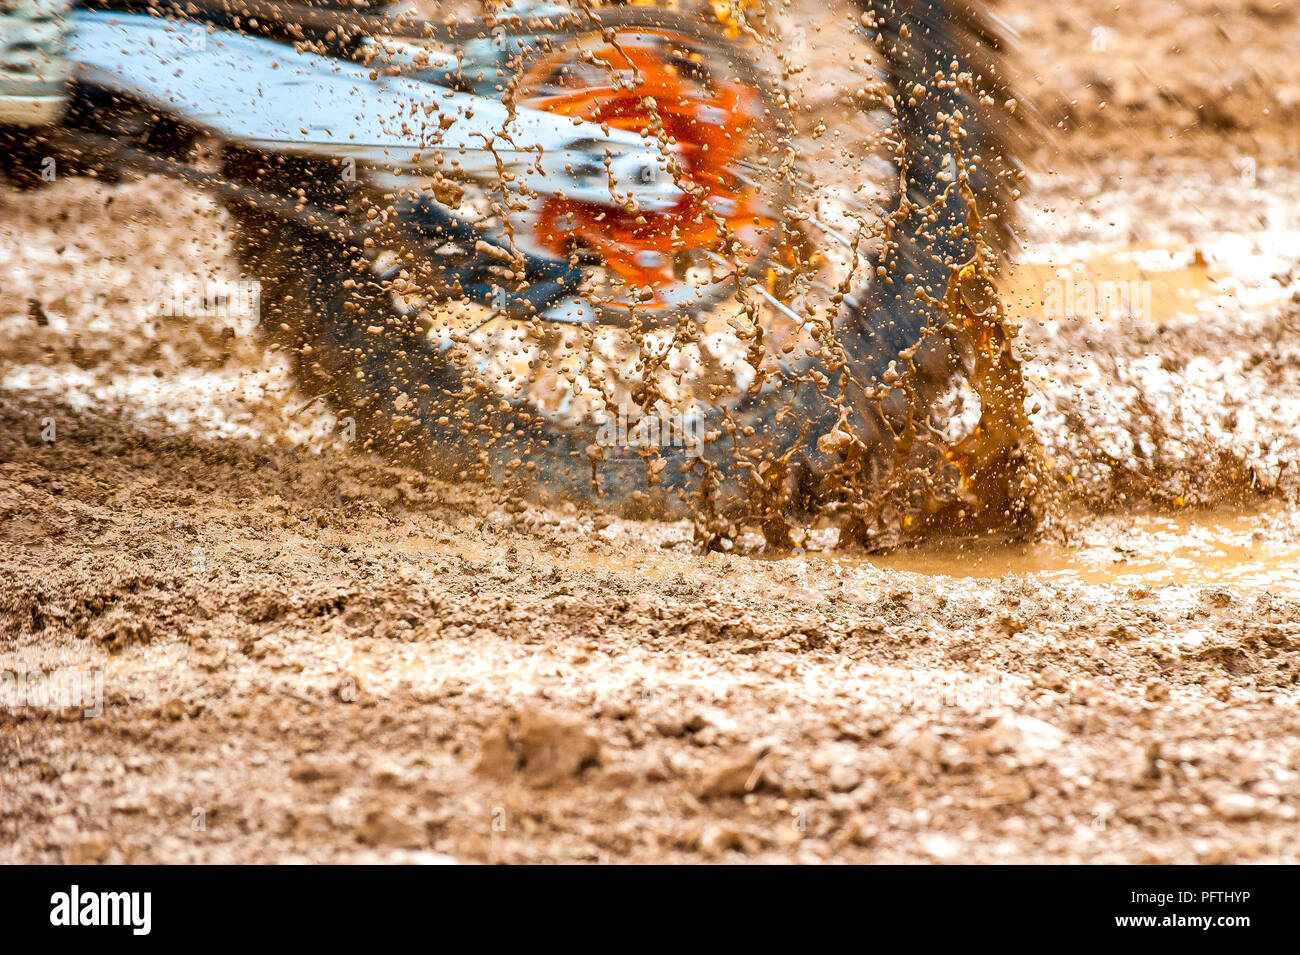 Détail de spinning bike motocross mx dans la boue lourde au cours de la race Banque D'Images